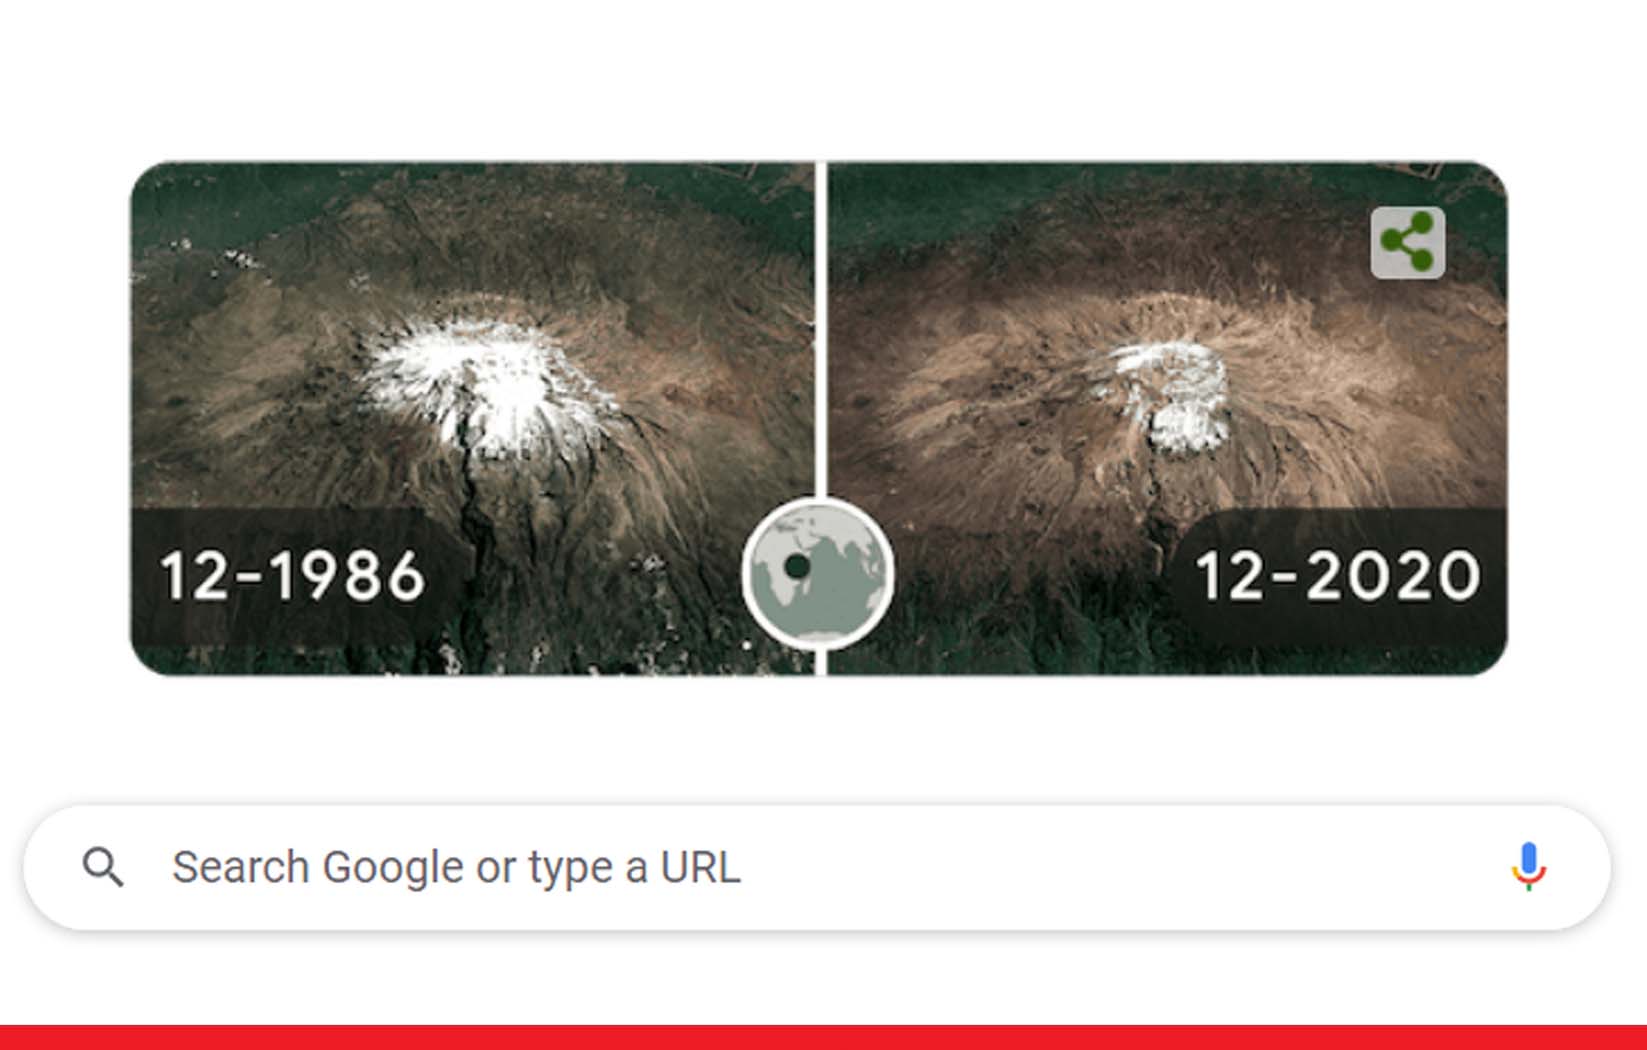 अर्थ डे यानि पृथ्वी दिवस के मौके पर गूगल ने डूडल के जरिये जलवायु परिवर्तन को बताया